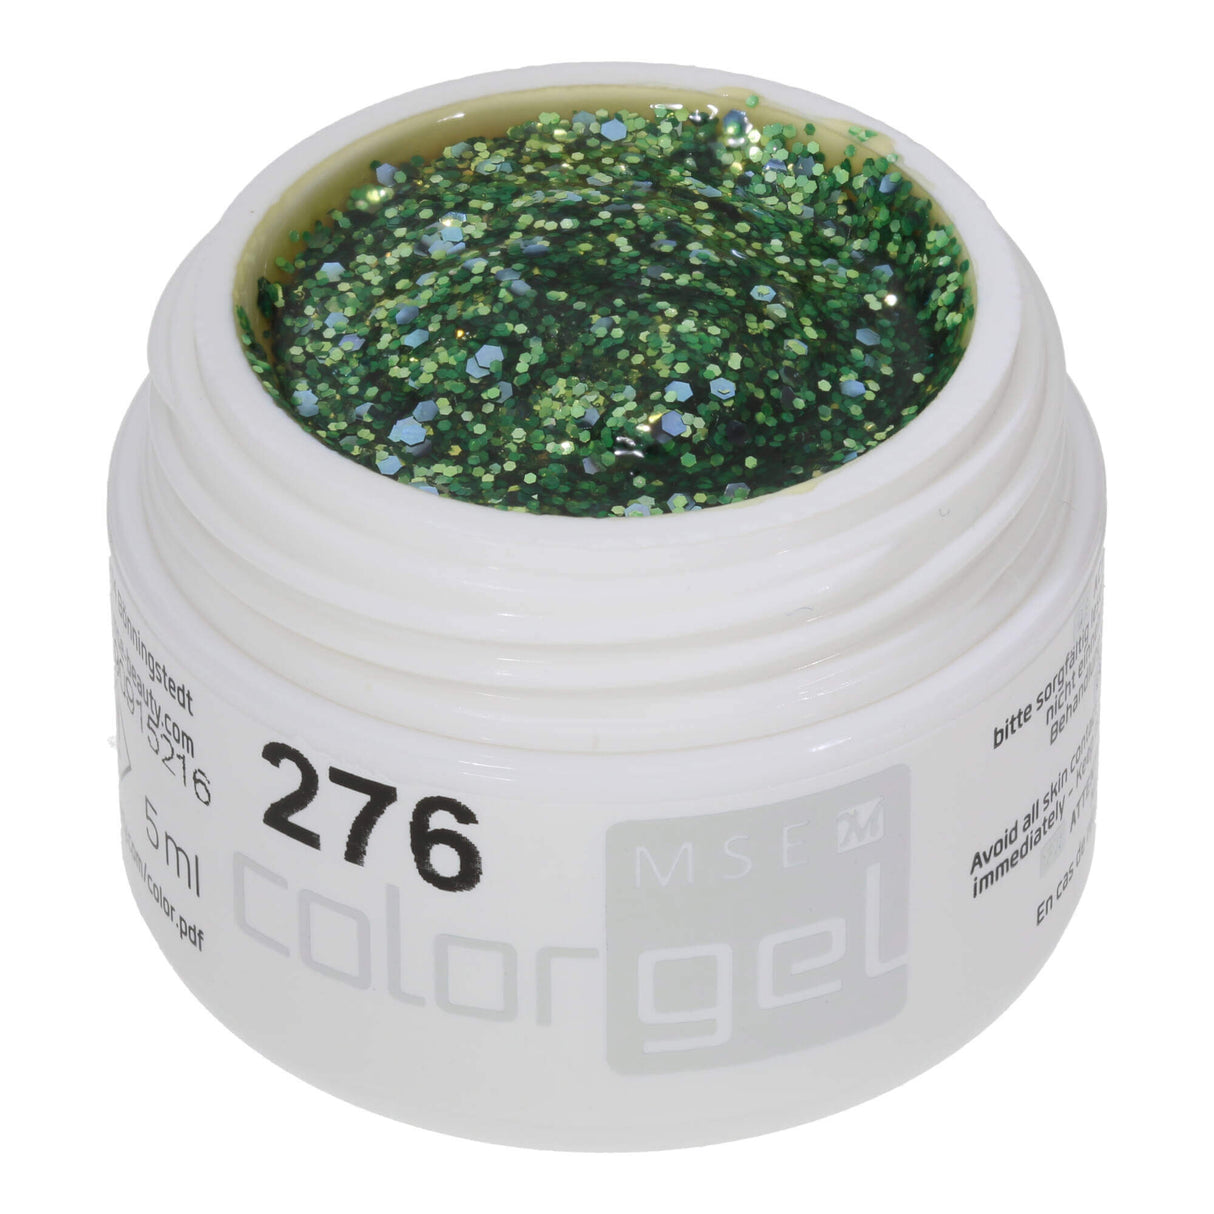 # 276 Premium GLITTER Color Gel 5ml Gel lấp lánh màu xanh lá cây tháng 5 được tạo điểm nhấn với ánh kim tuyến màu tím thô